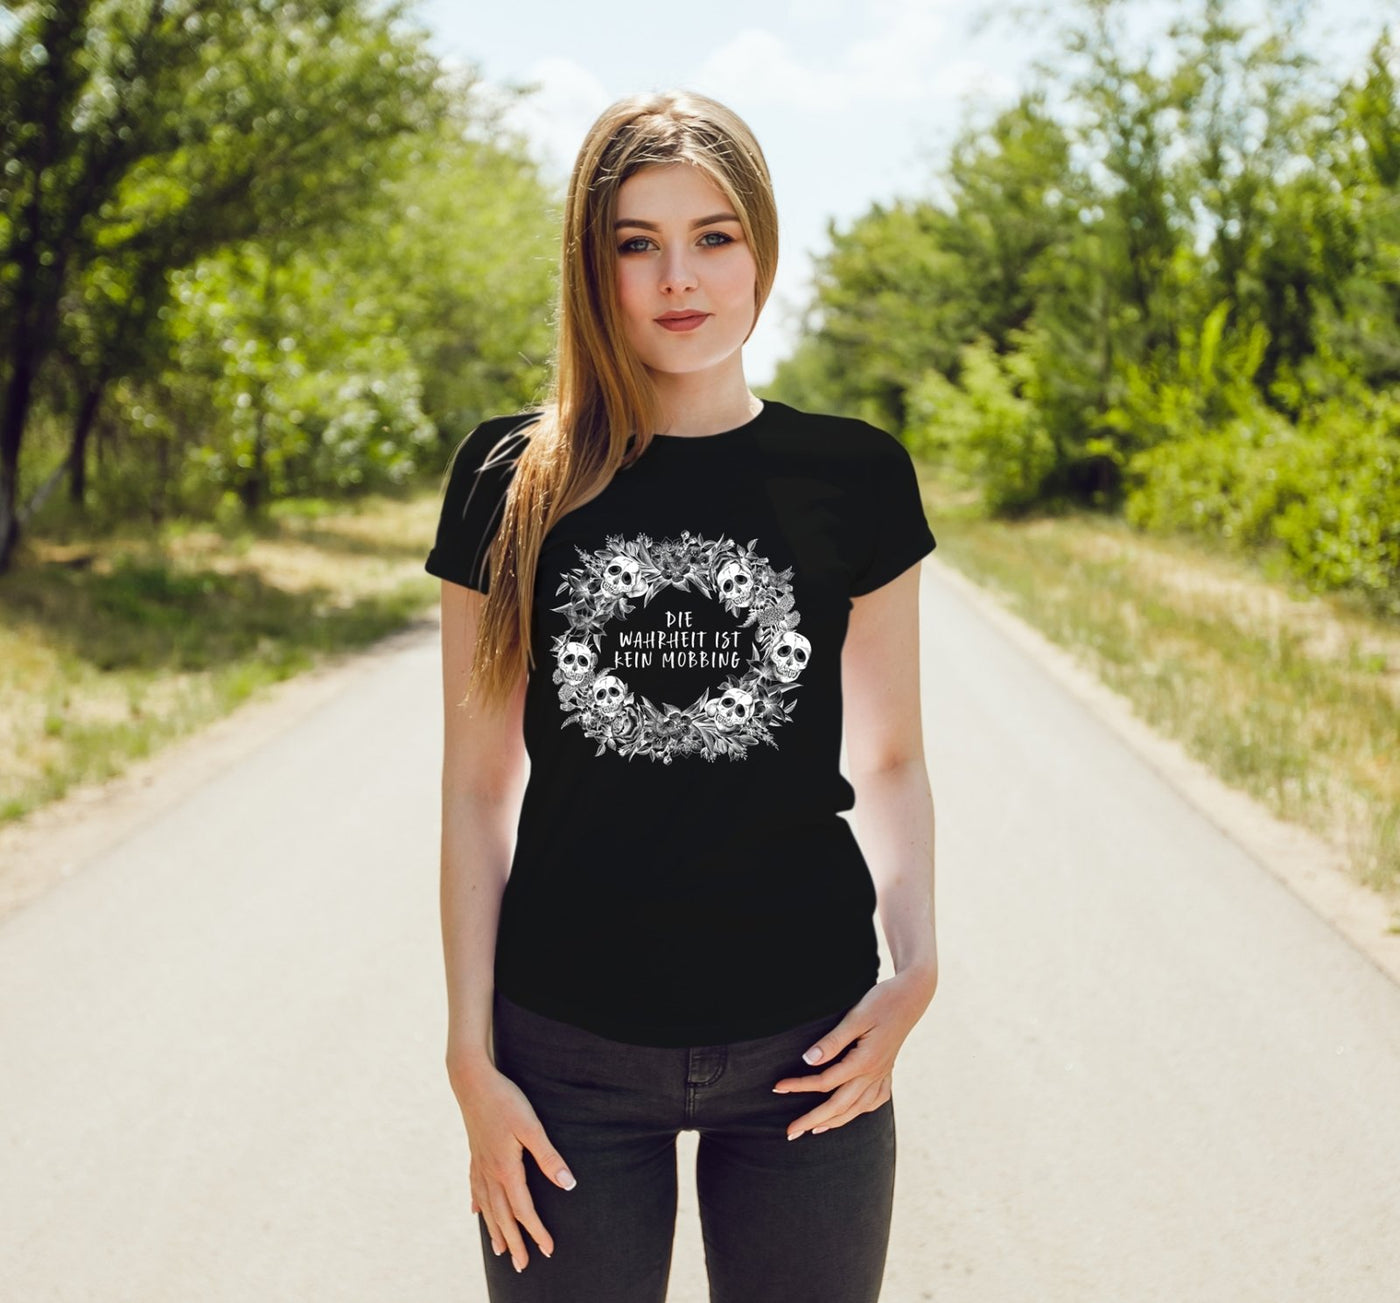 Bild: T-Shirt Damen - Die Wahrheit ist kein Mobbing - Skull Statement Geschenkidee